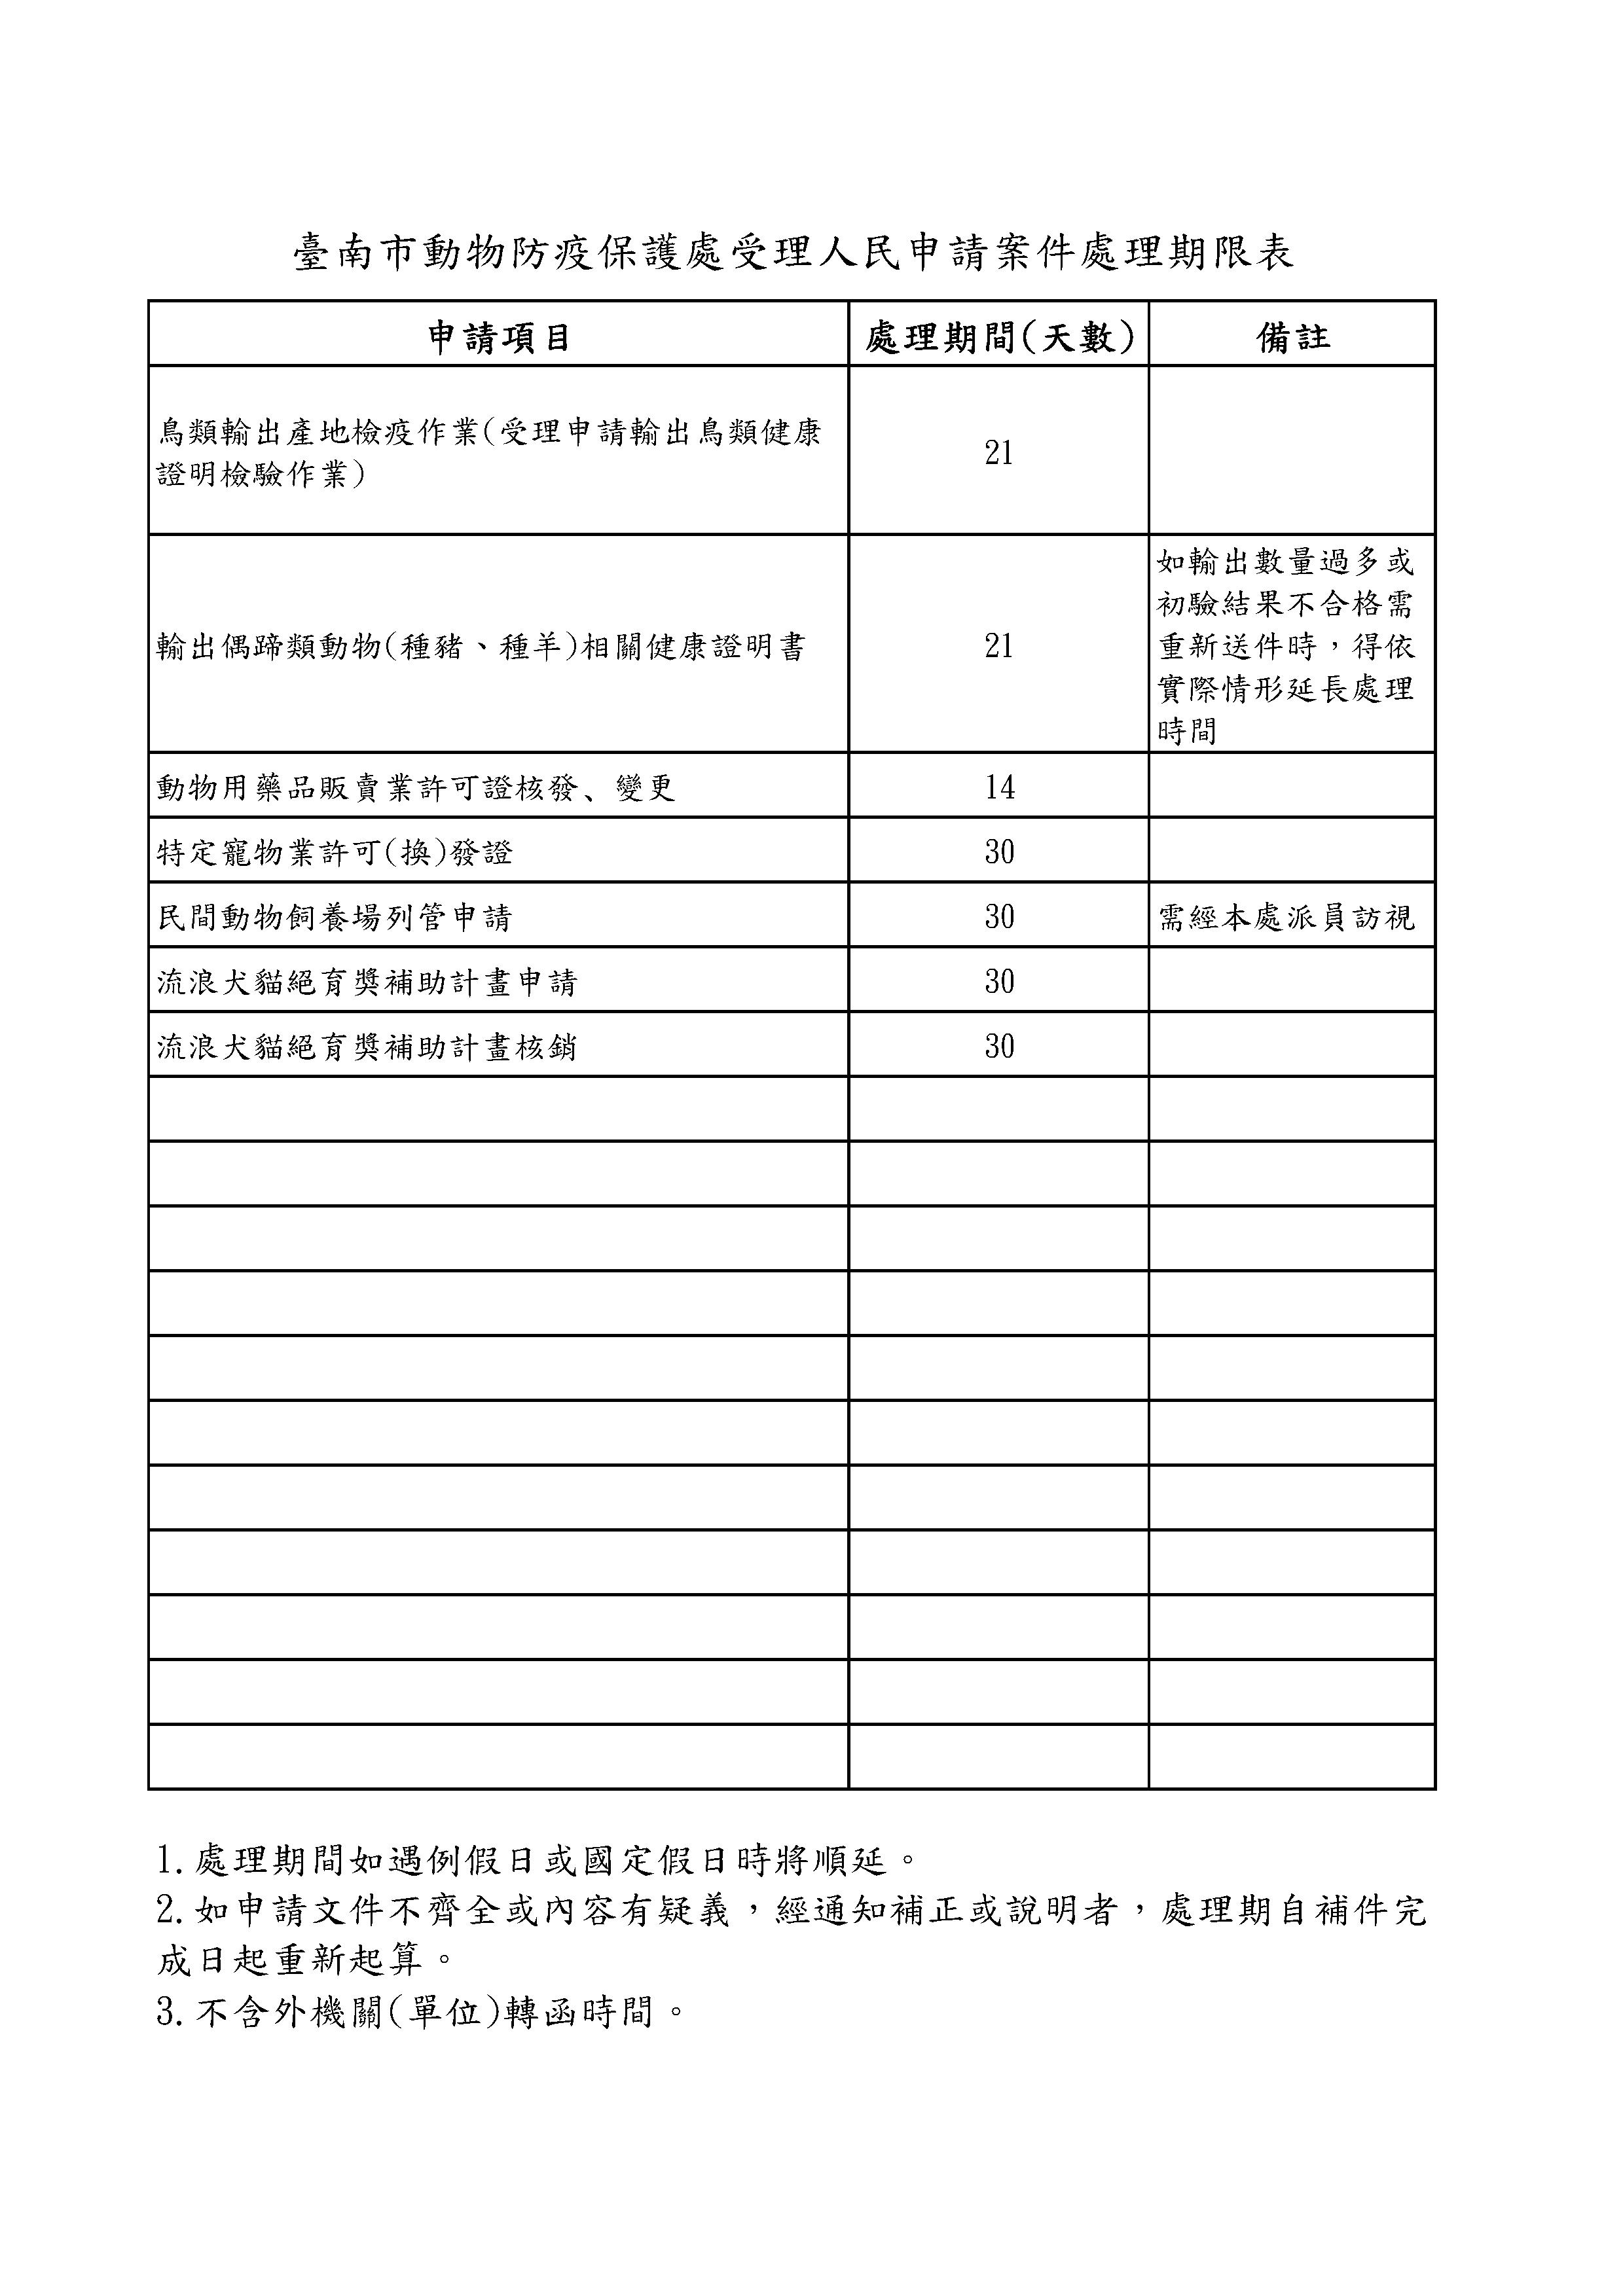 臺南市動物防疫保護處受理人民申請案件處理期限表